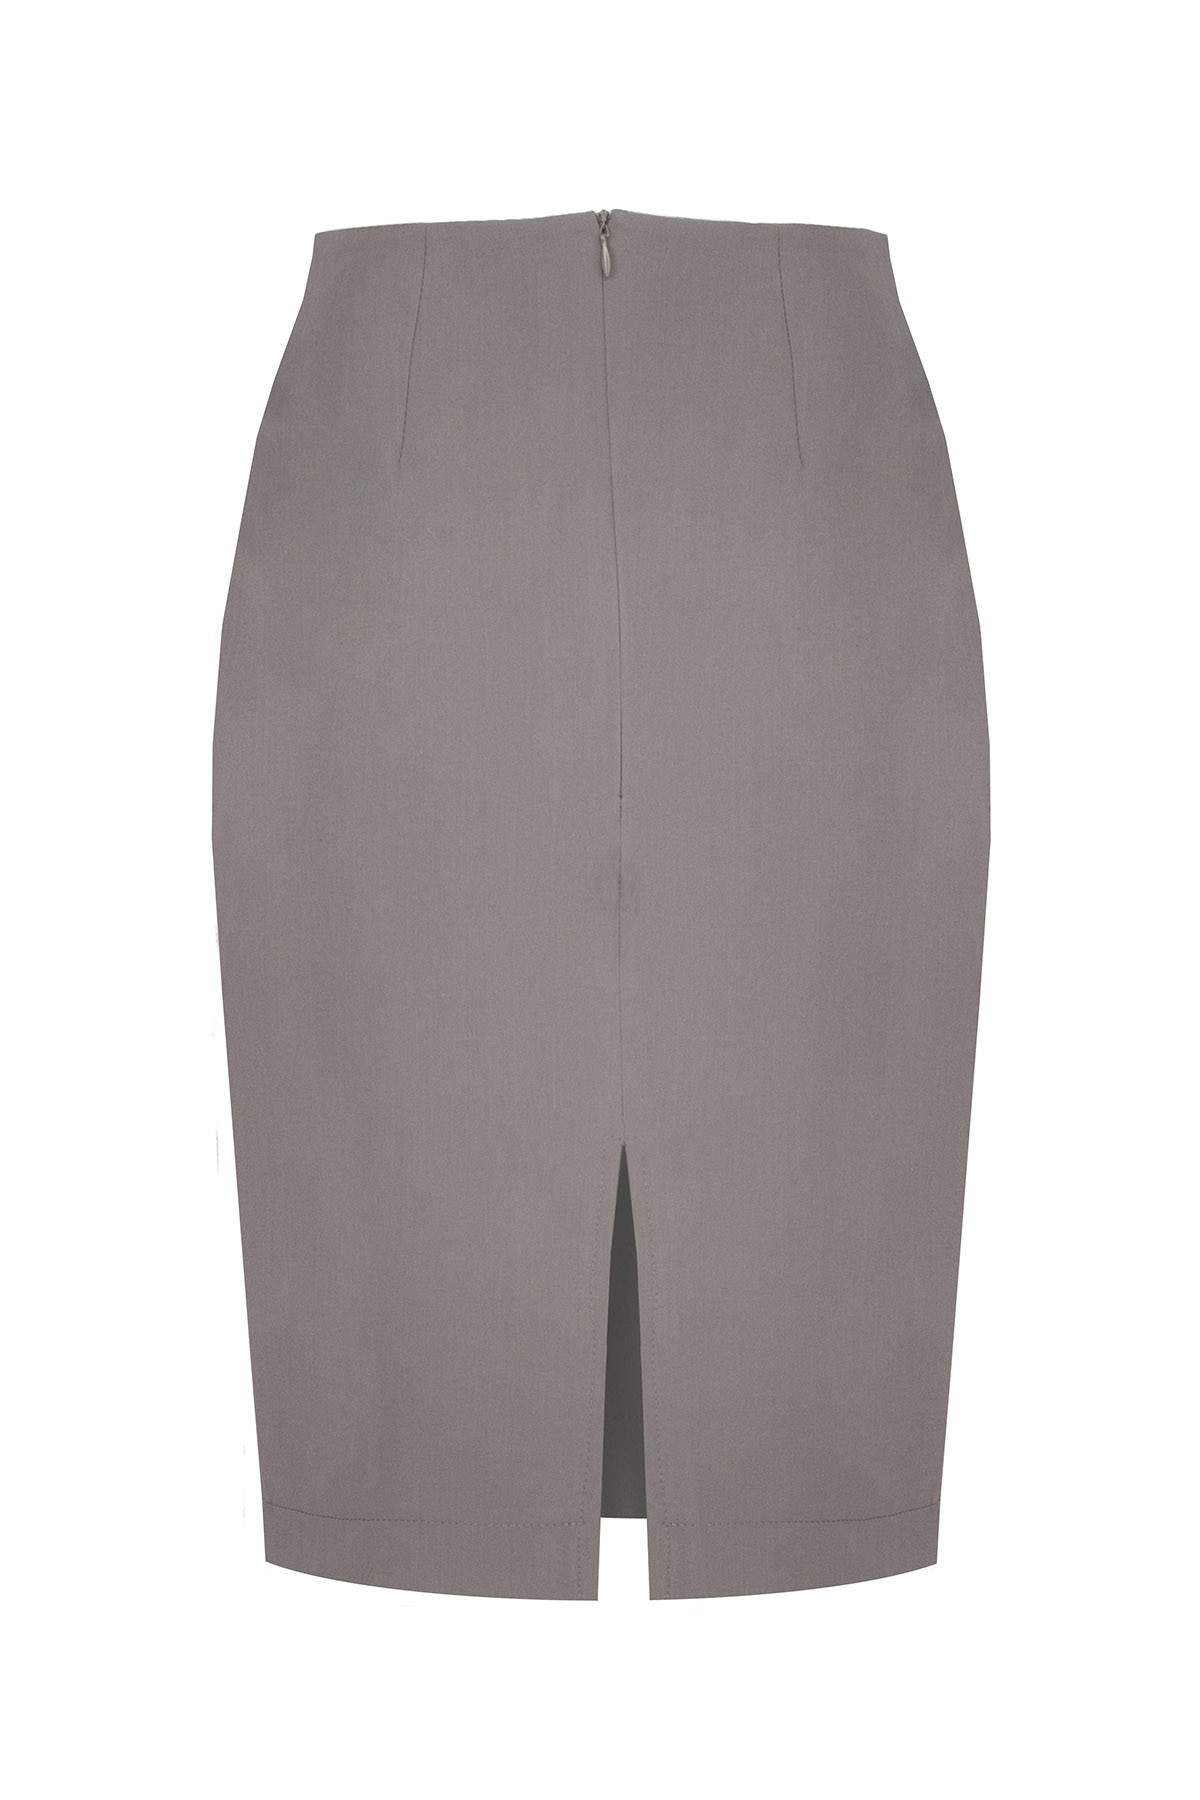 Dámská sukně model 17976151 S - Figl Velikost: XL, Barvy: šedá